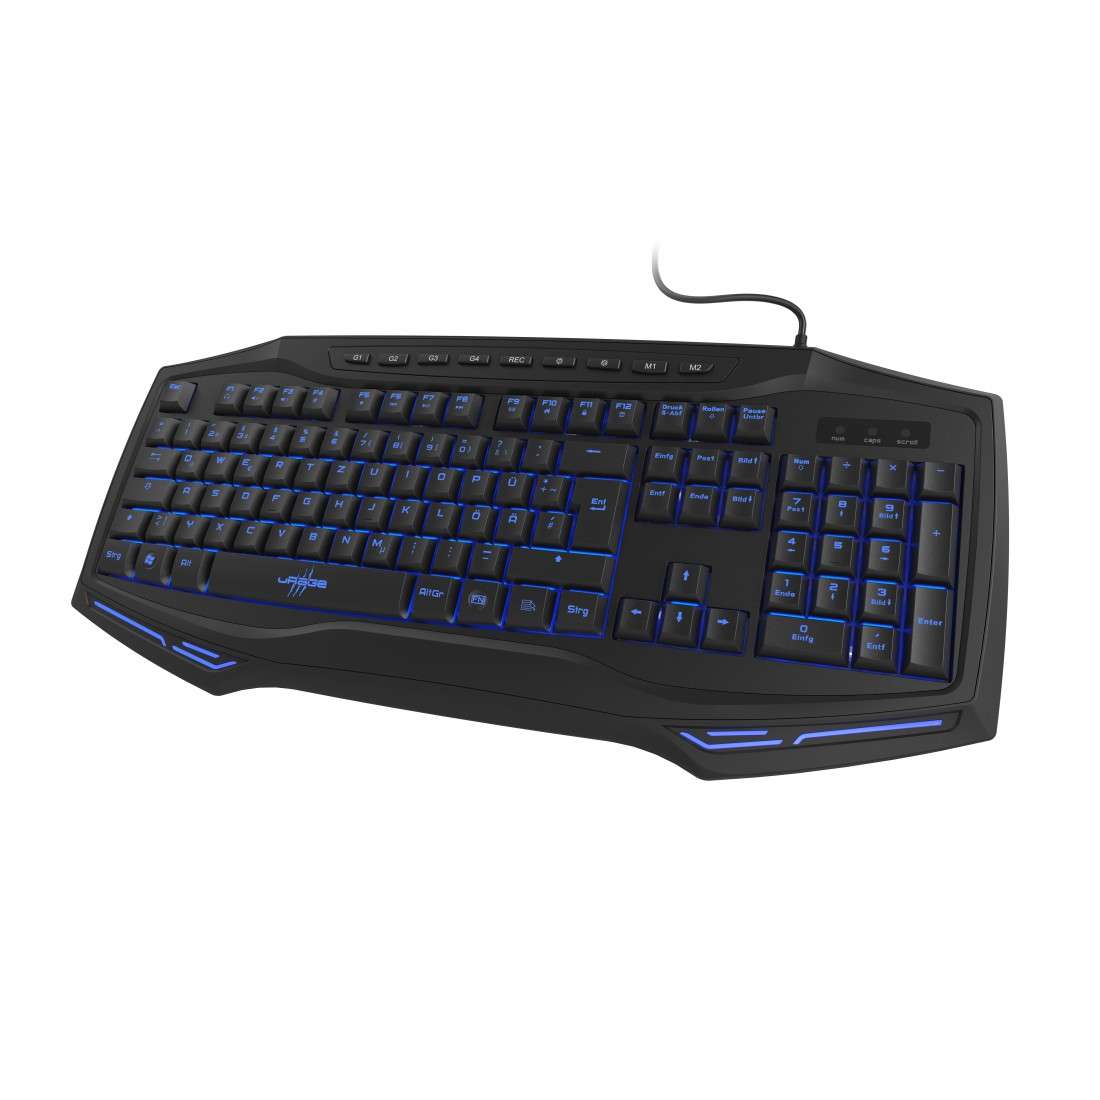 URAGE Gaming-Keyboard Exodus 300 Illuminated